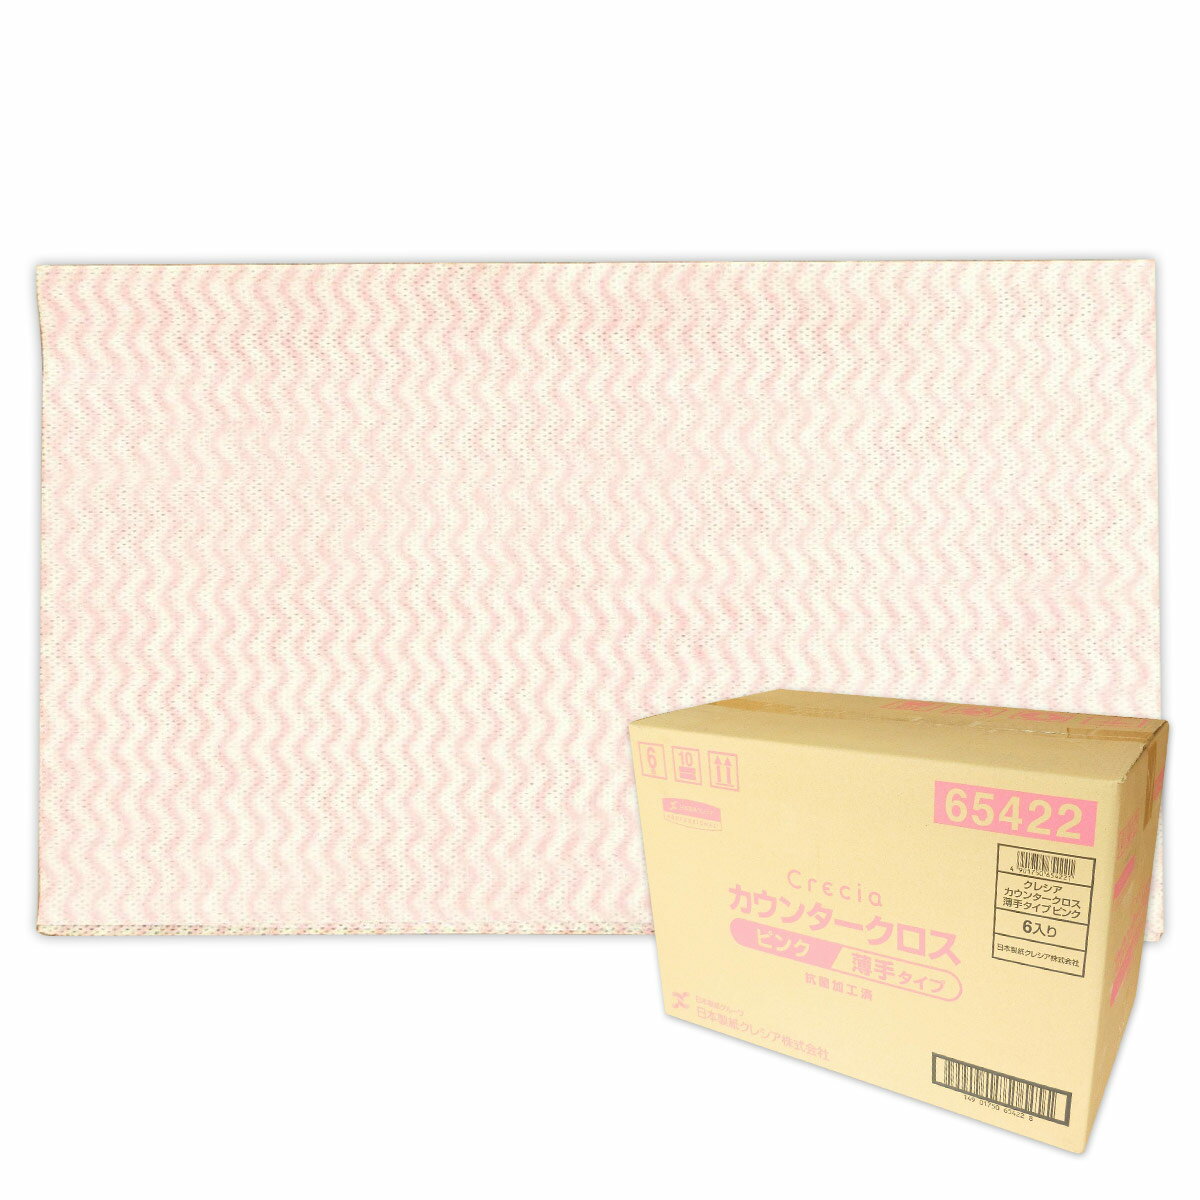 クレシア カウンタークロス 薄手タイプ ピンク 600枚（100枚入×6箱）【日本製紙クレシア】【65422】